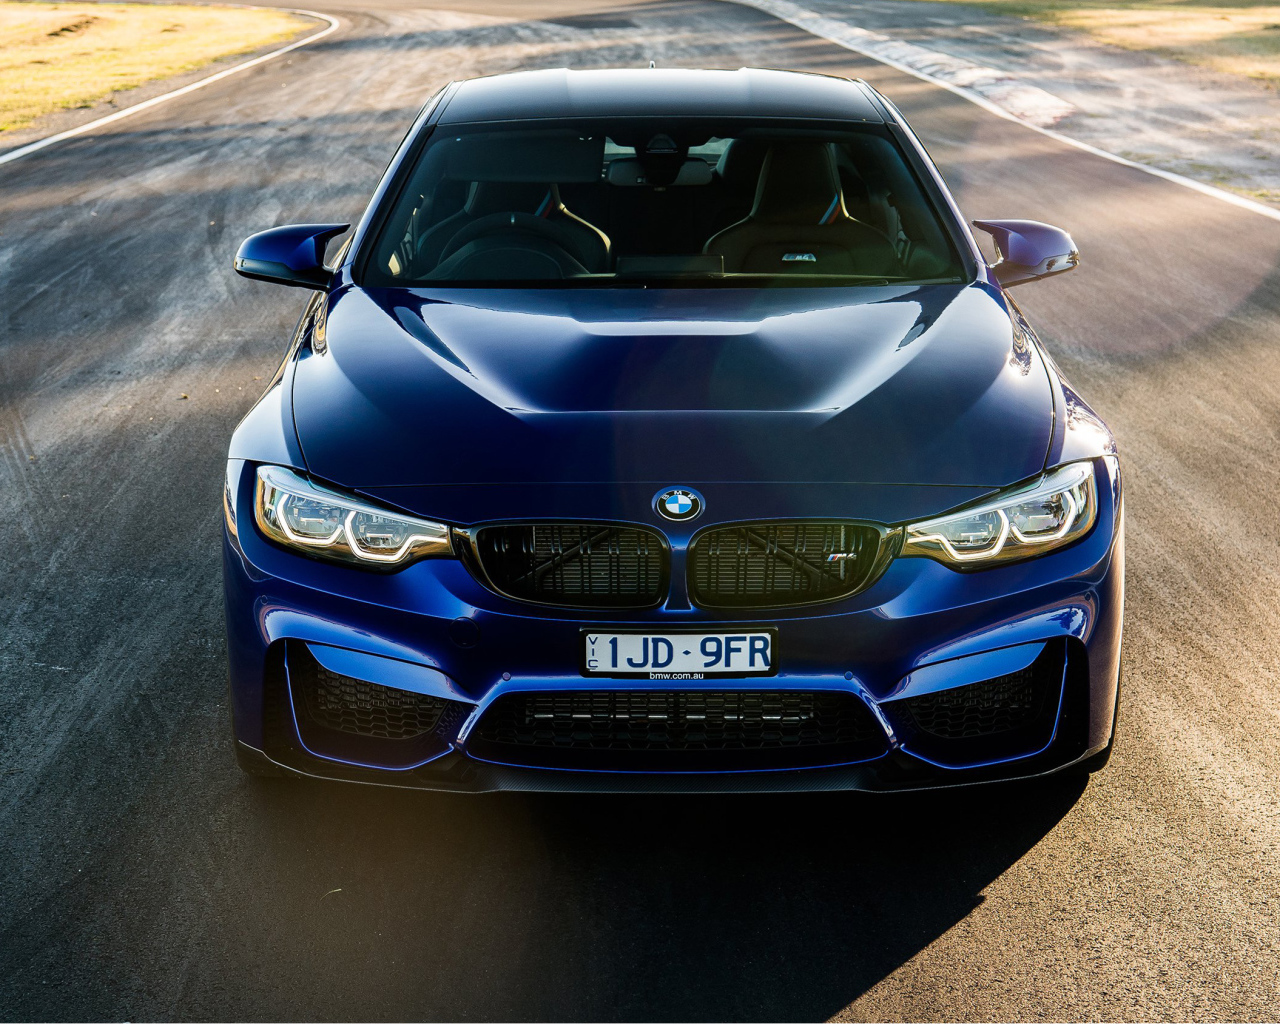 Синий стильный автомобиль BMW M4 CS, 2018 вид спереди